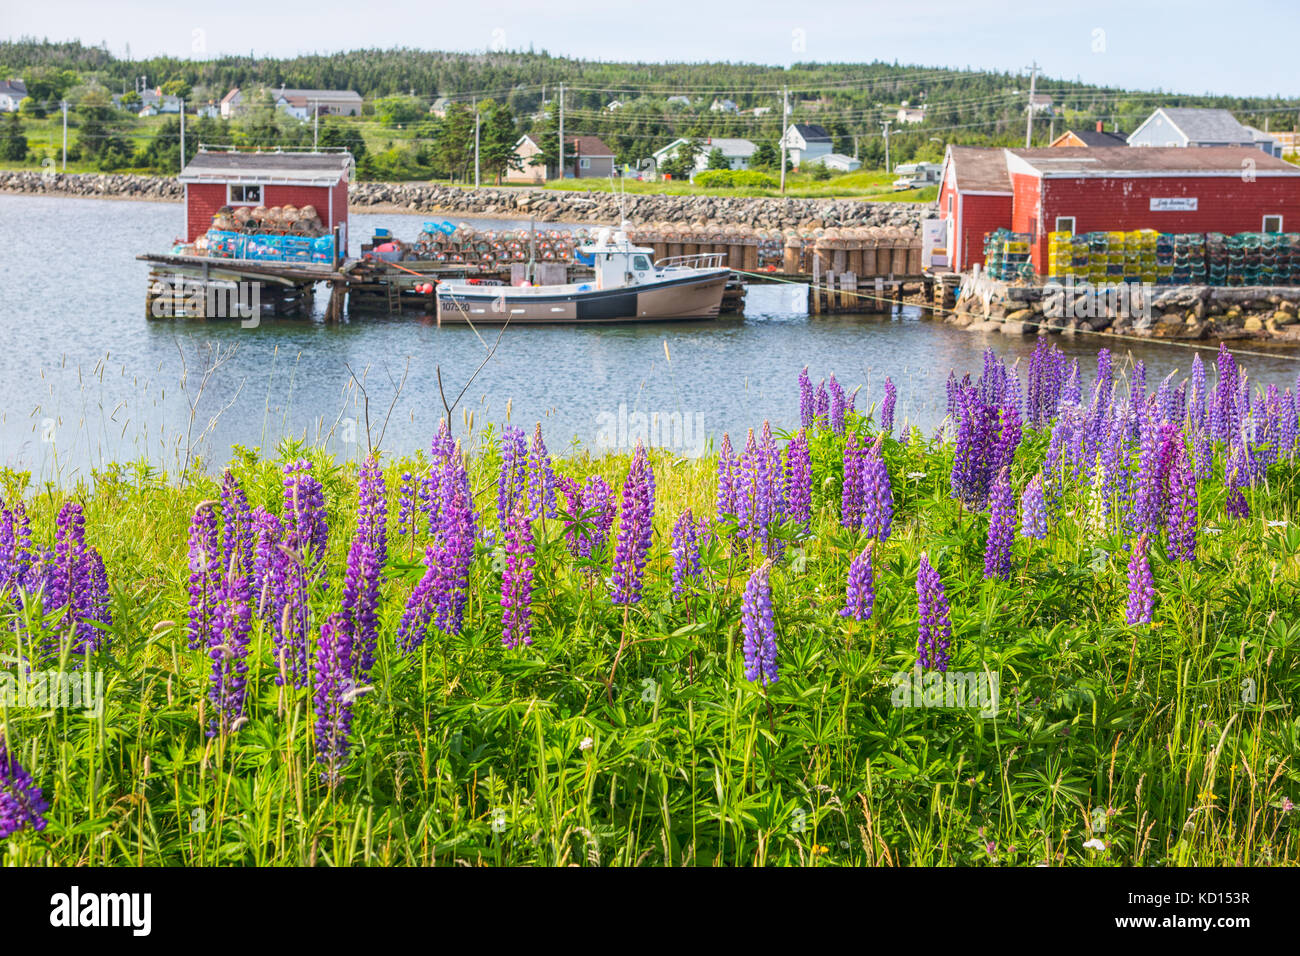 Bateau de pêche amarrés au quai, Louisbourg, île du Cap-Breton, Nouvelle-Écosse, Canada Banque D'Images